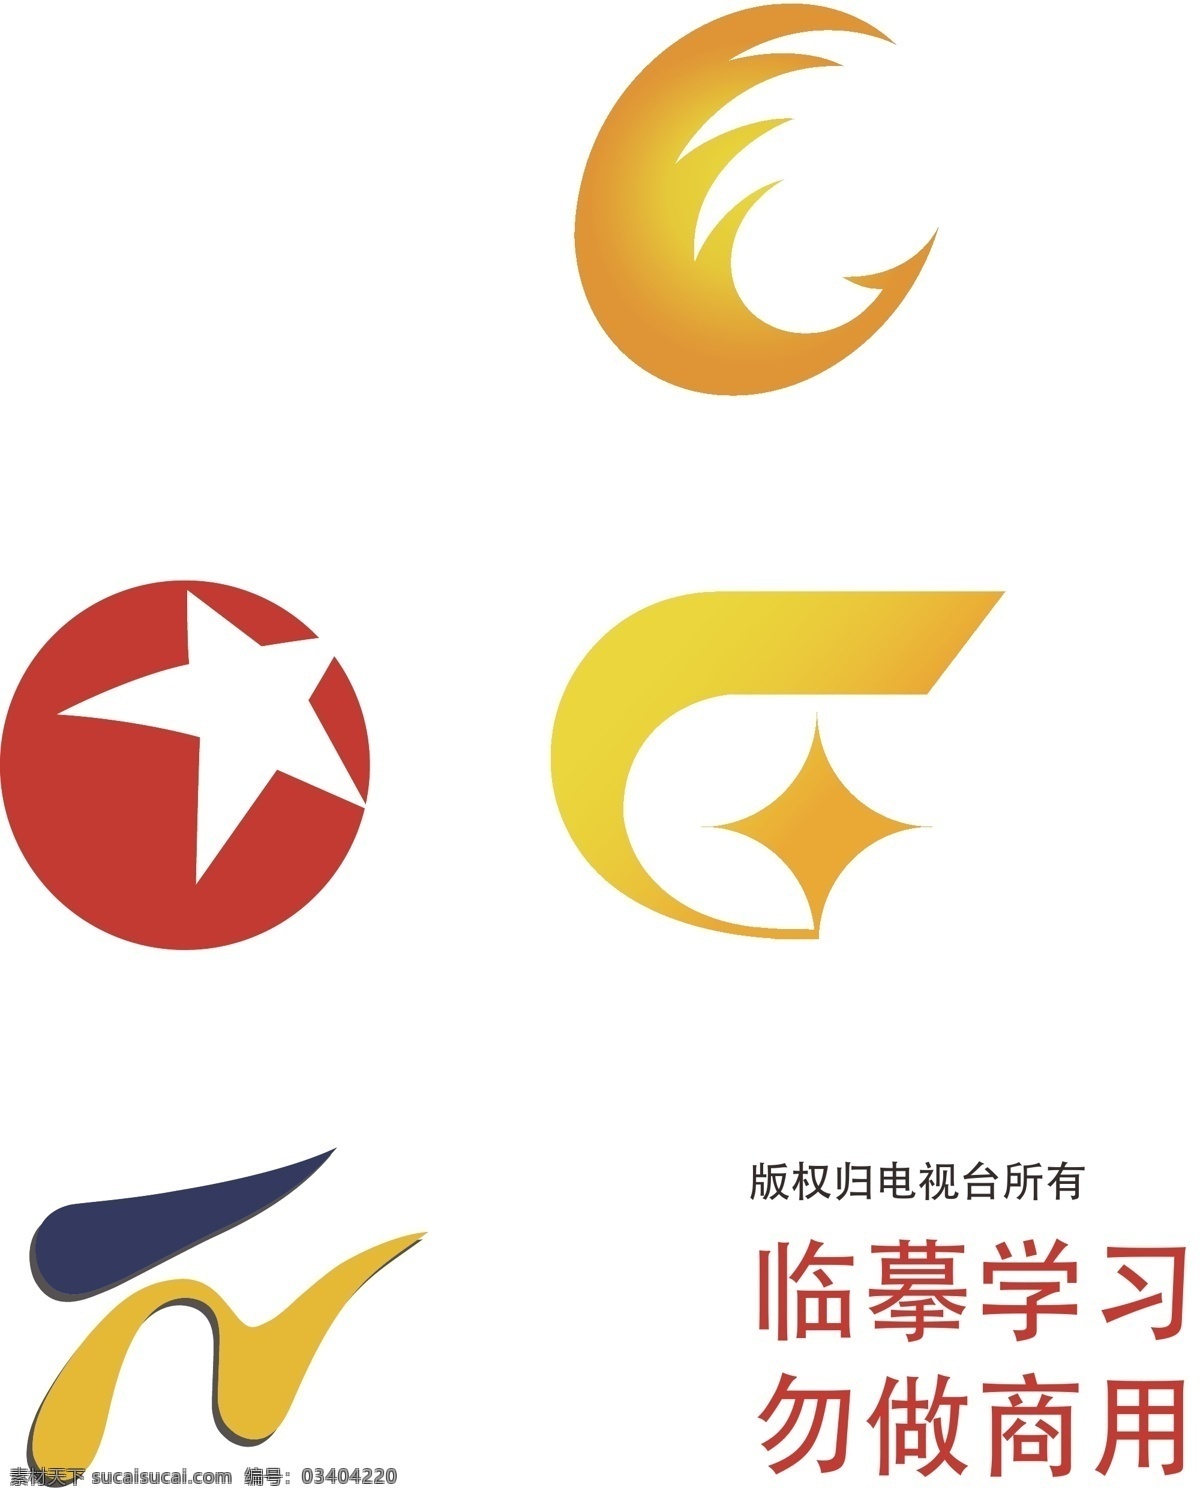 电视台 logo 卫视标志 江苏 卫视 安徽卫视 旅游卫视 东方卫视